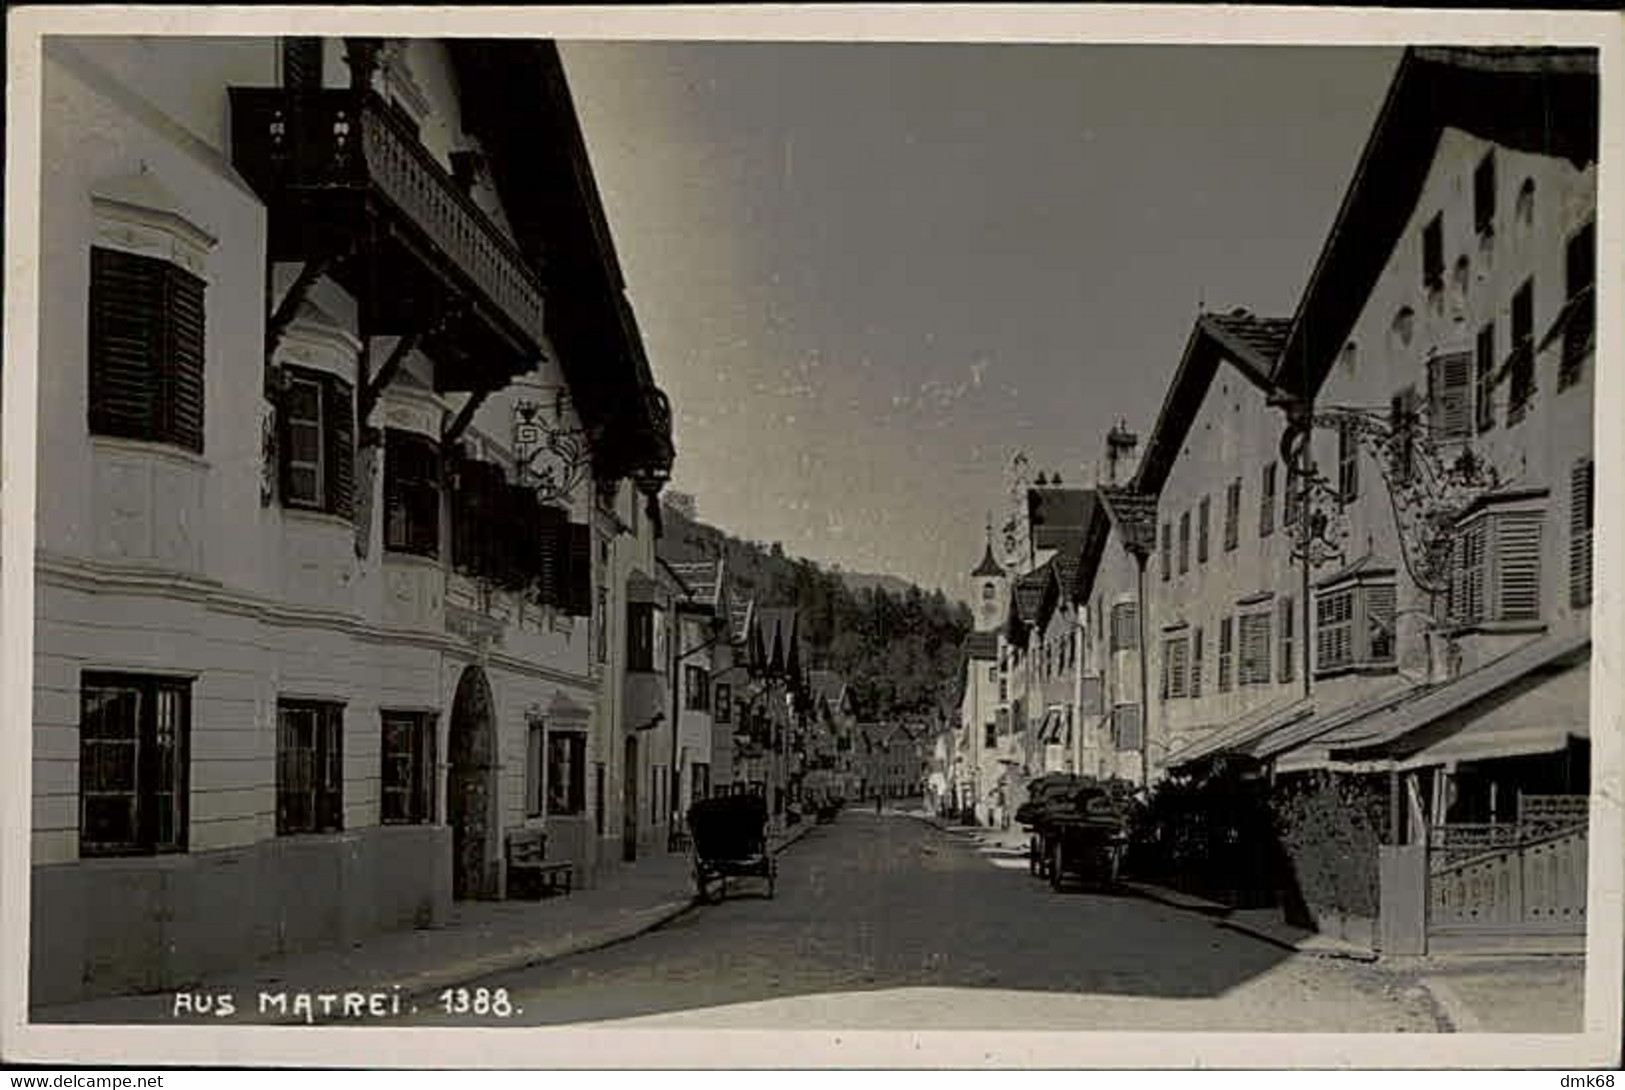 AUSTRIA - AUS  MATREI - FOTO STOCKHAMMER - RPPC POSTCARD 1940s (15528) - Matrei In Osttirol